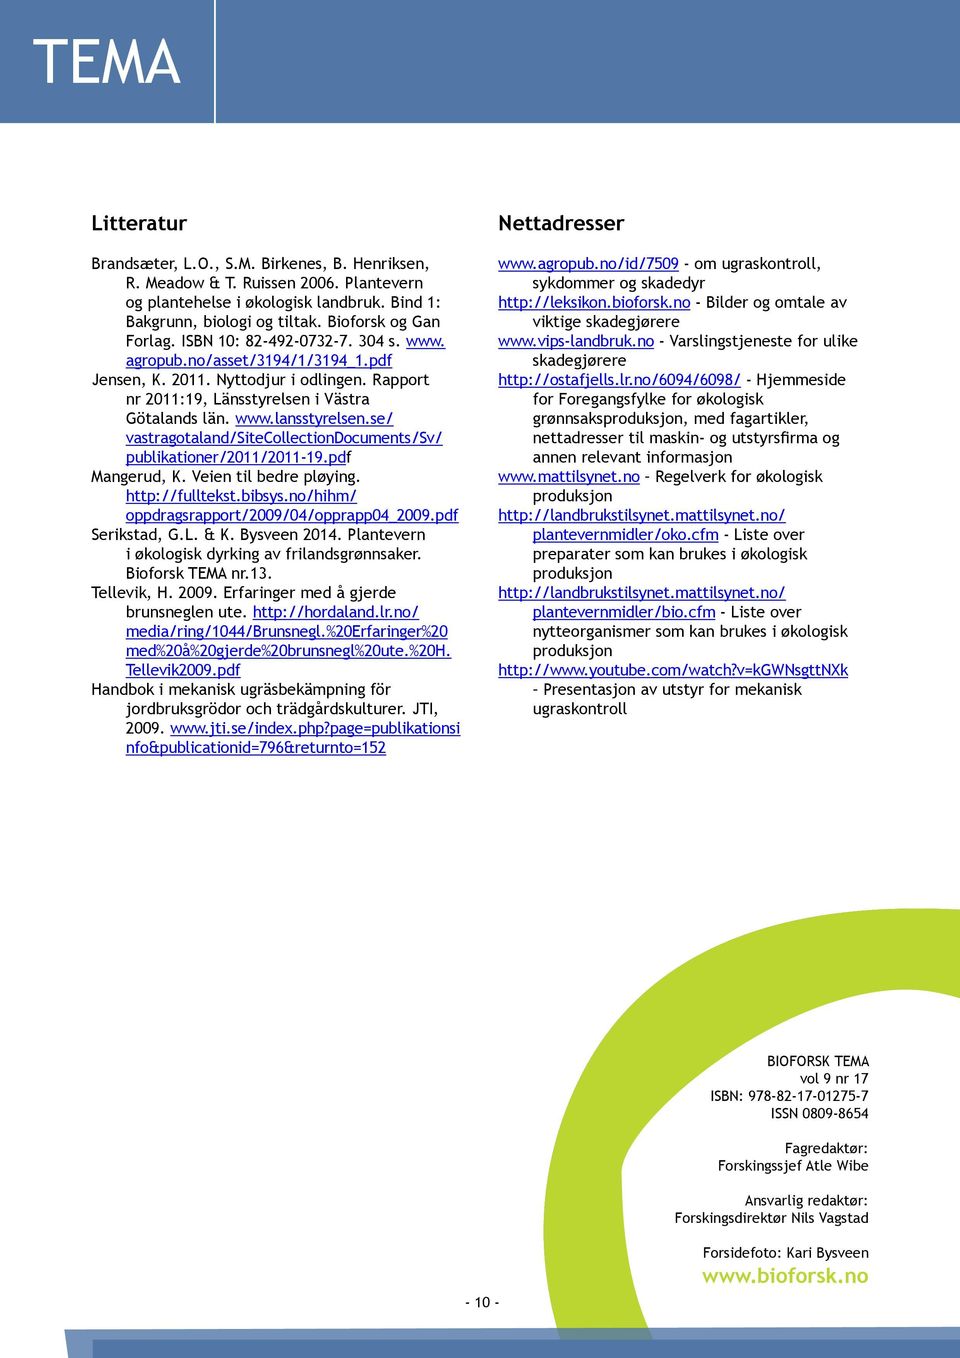 se/ vastragotaland/sitecollectiondocuments/sv/ publikationer/2011/2011-19.pdf Mangerud, K. Veien til bedre pløying. http://fulltekst.bibsys.no/hihm/ oppdragsrapport/2009/04/opprapp04_2009.